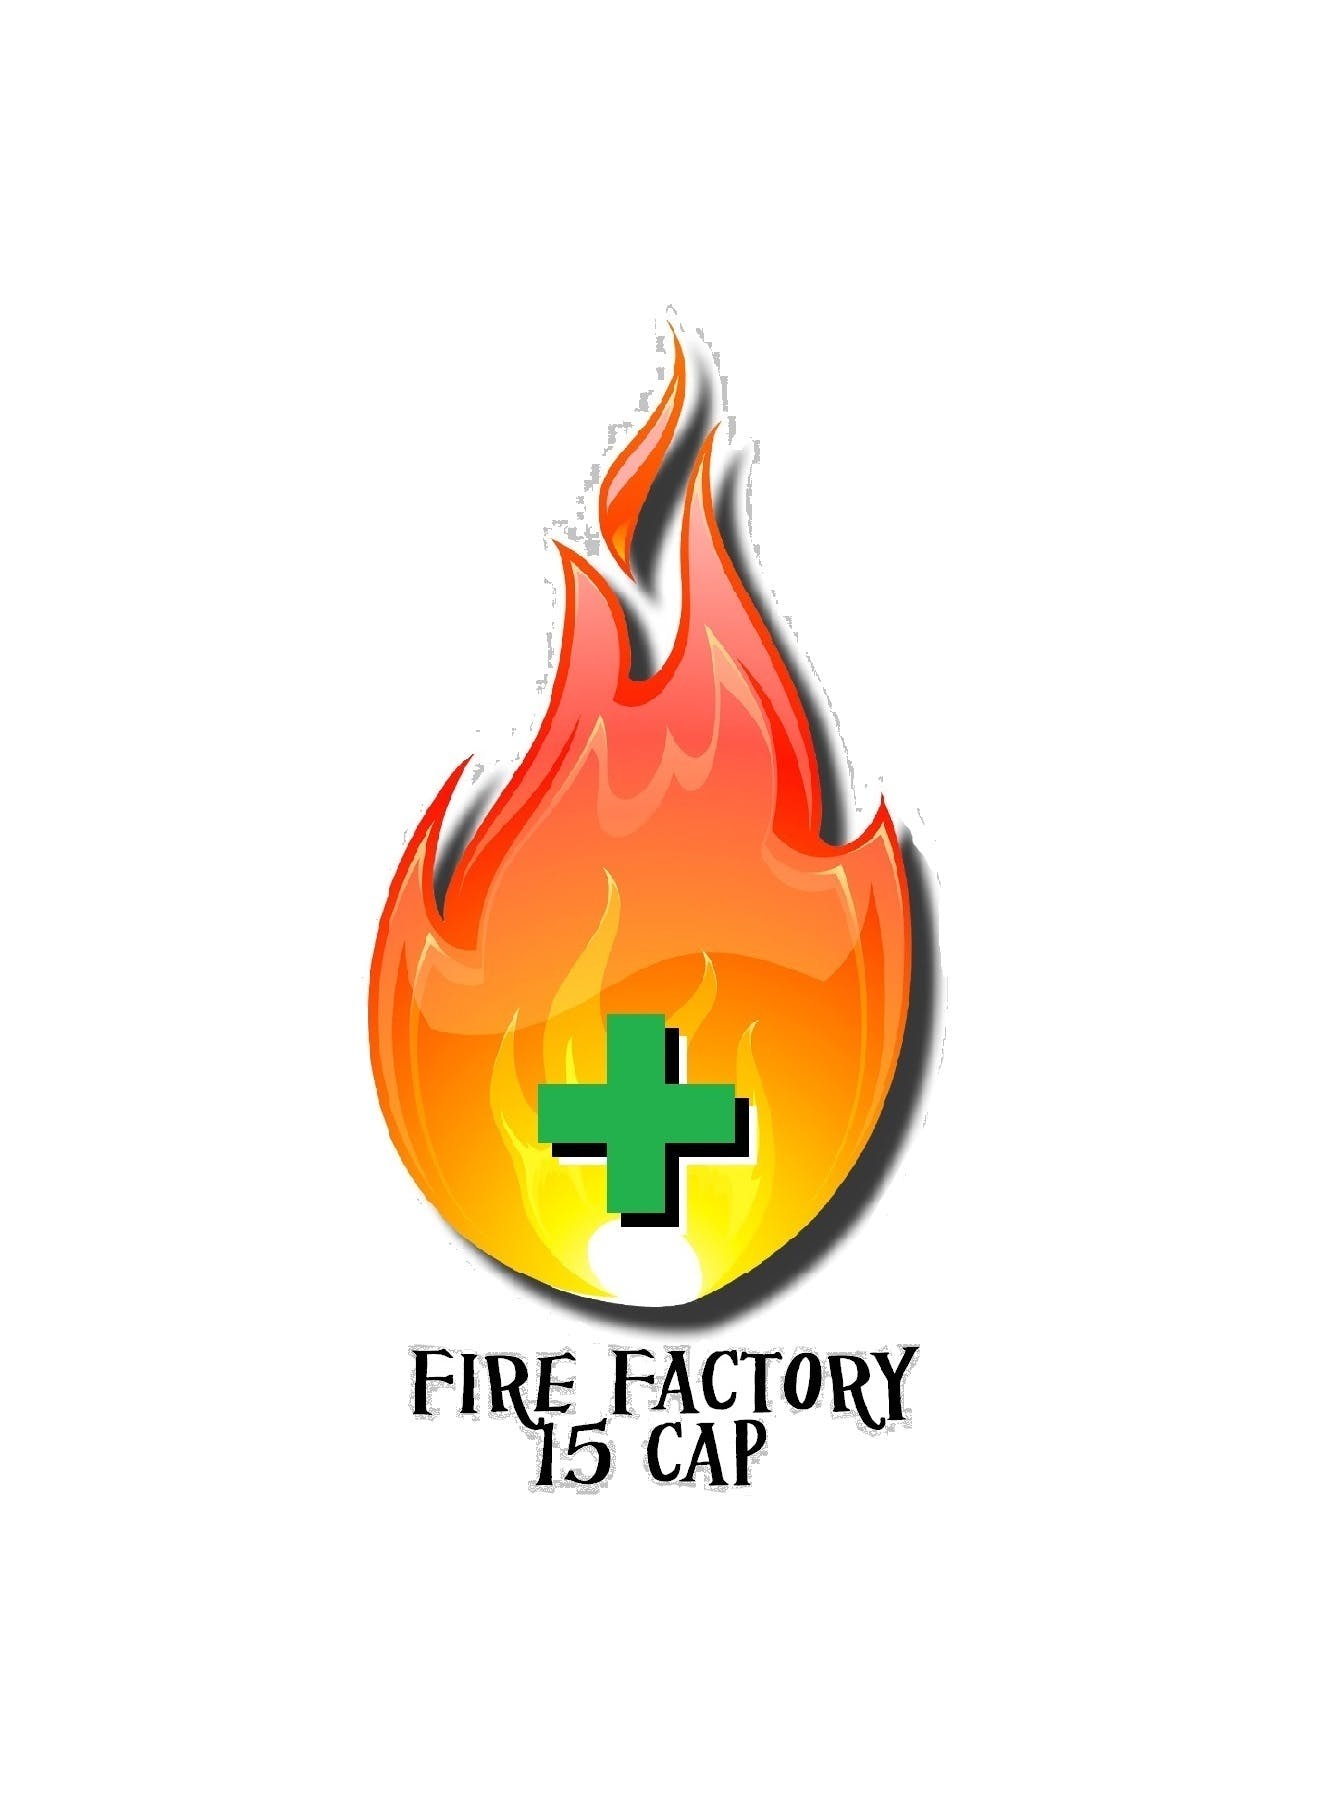 Fire Factory 15 Cap - Medical Marijuana Doctors - Cannabizme.com